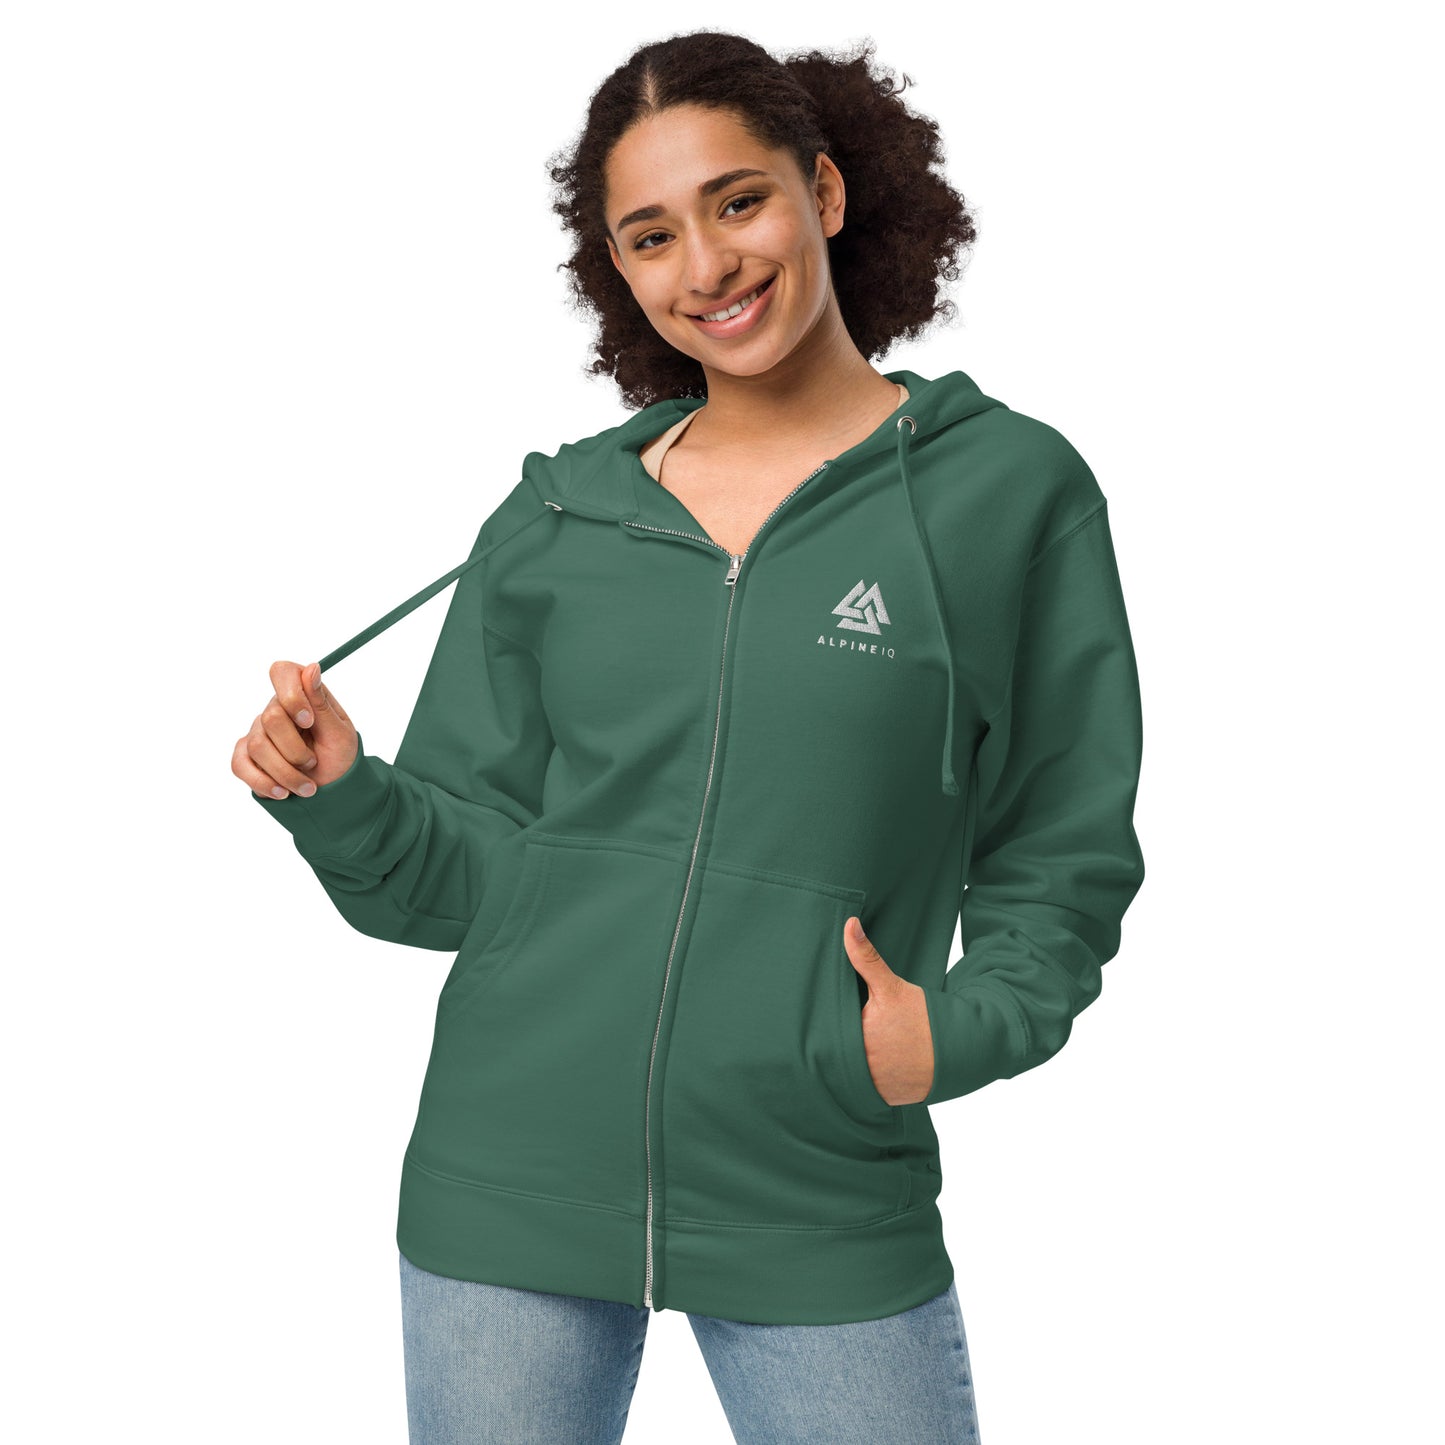 Alpine IQ fleece zip up hoodie - Alpine Green